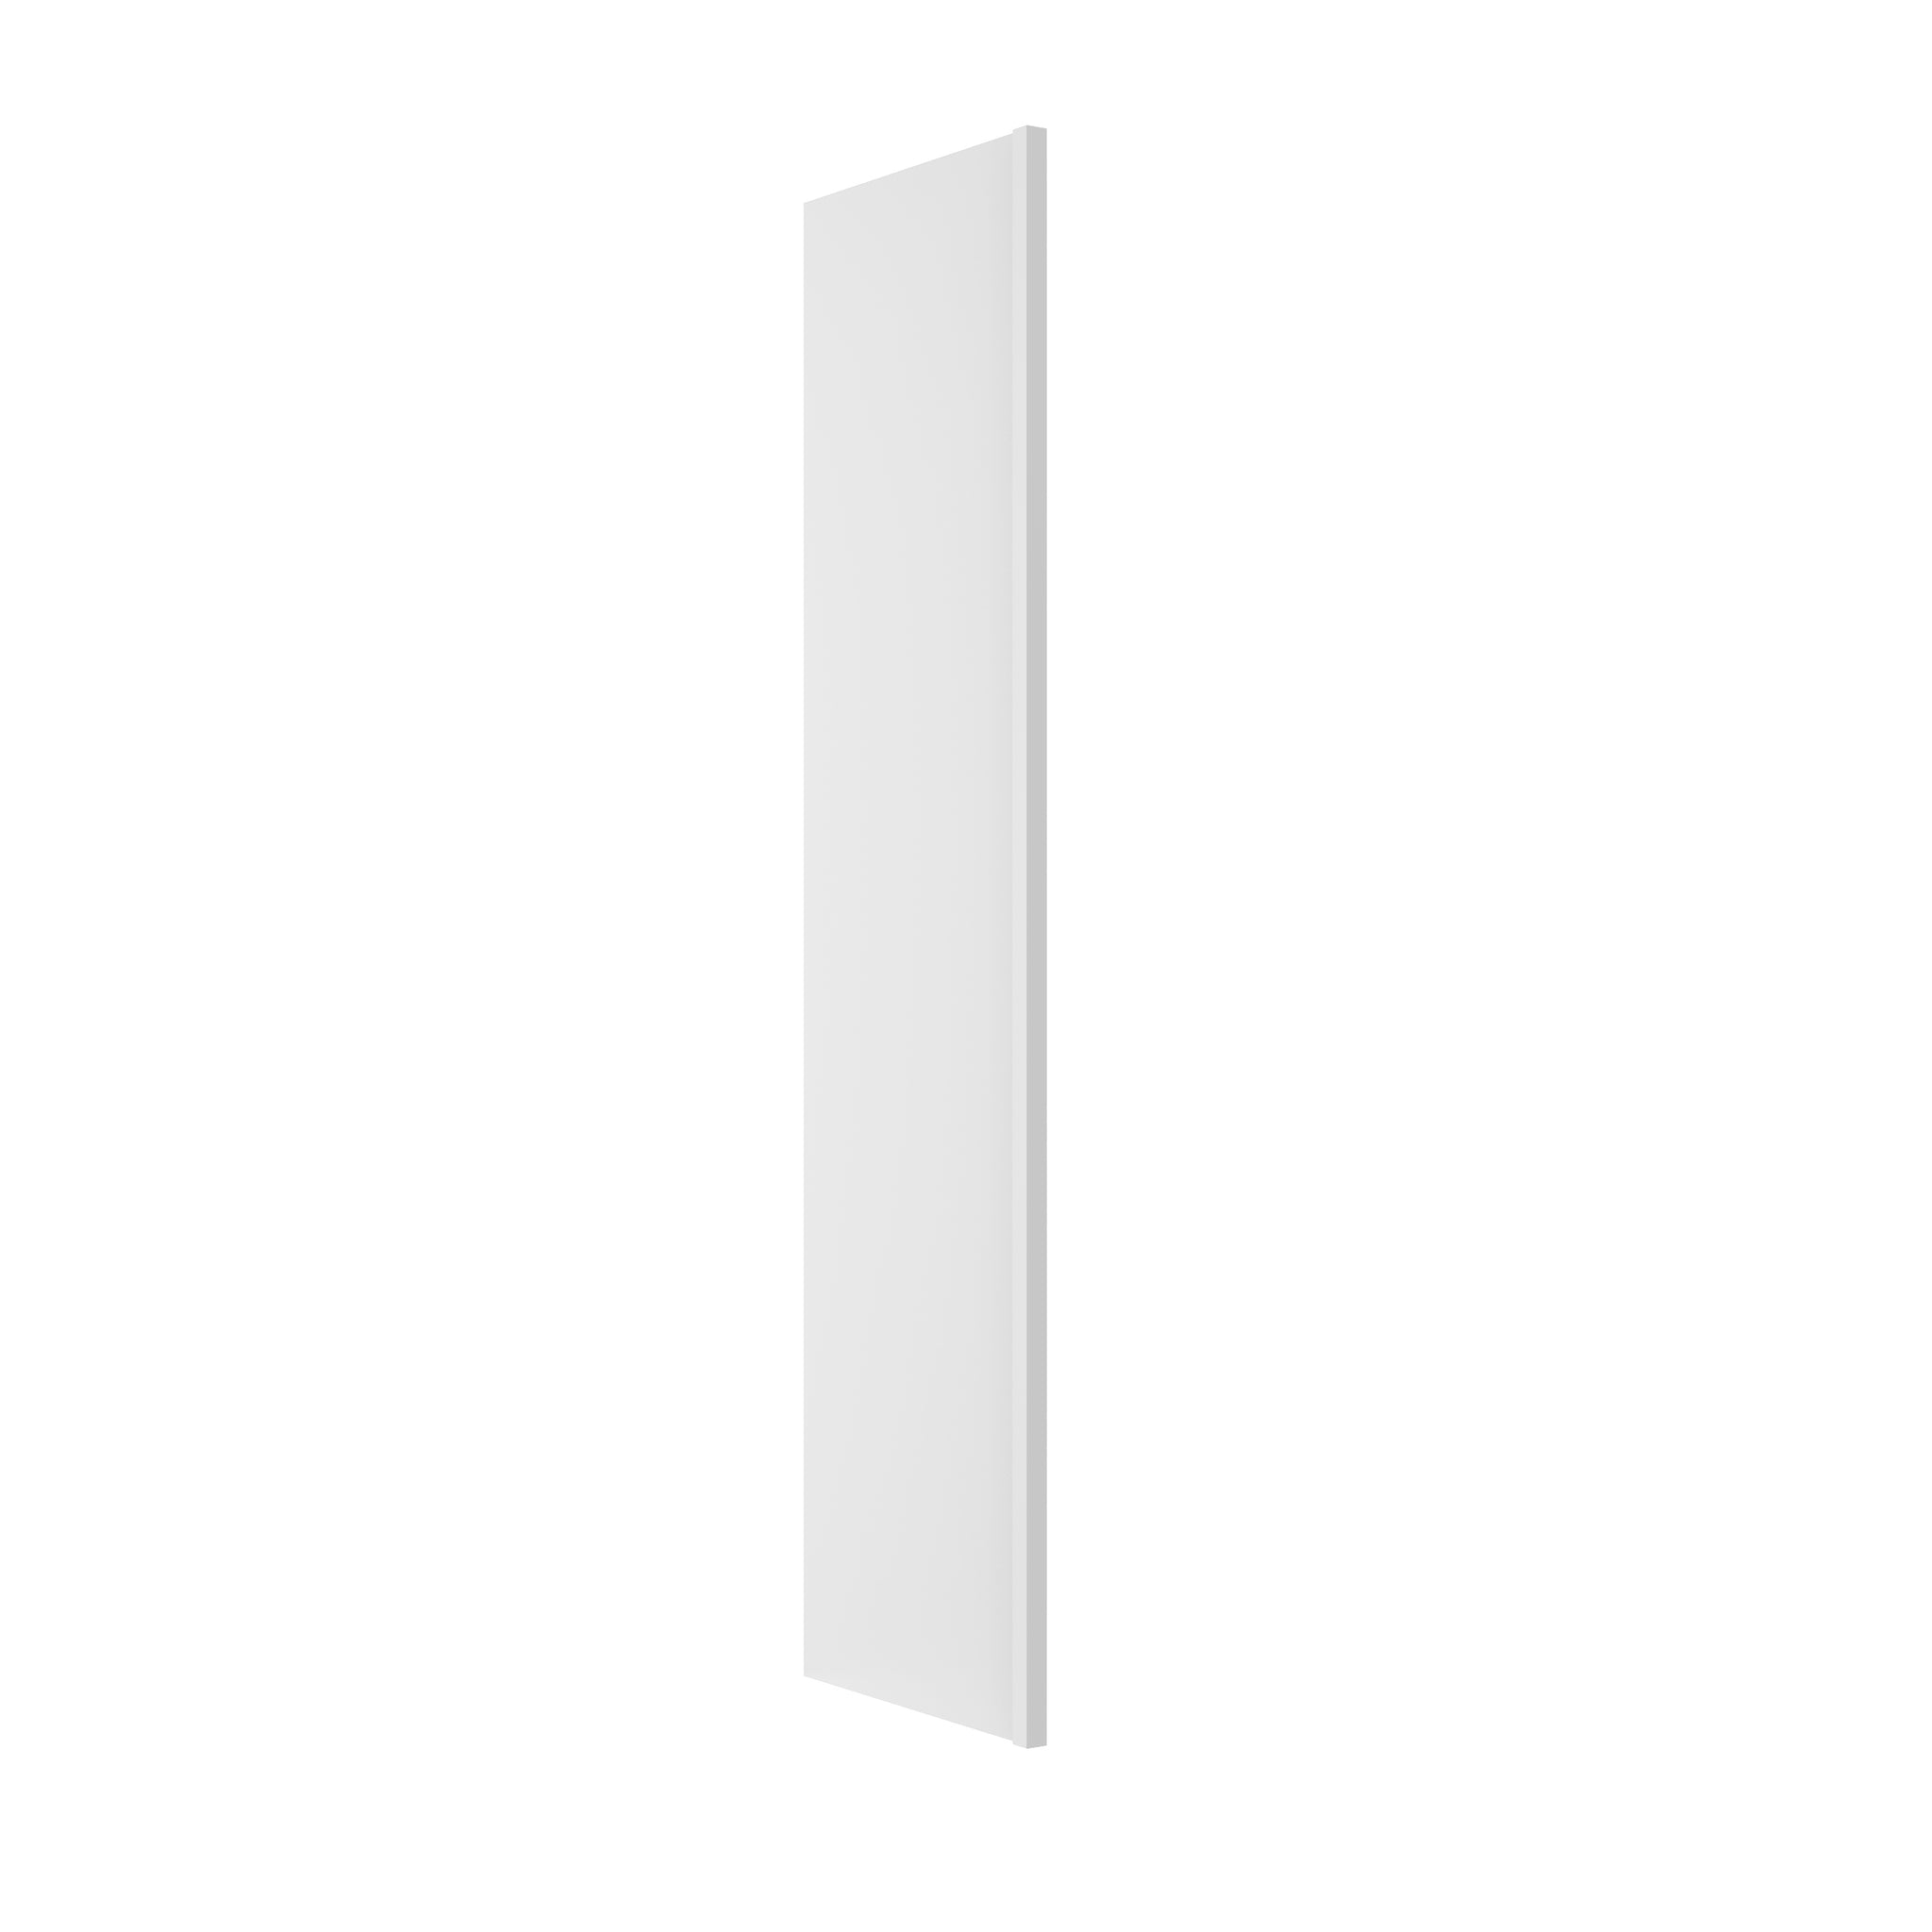 Fashion White - Refrigerator End Panel | 3"W x 90"H x 24"D